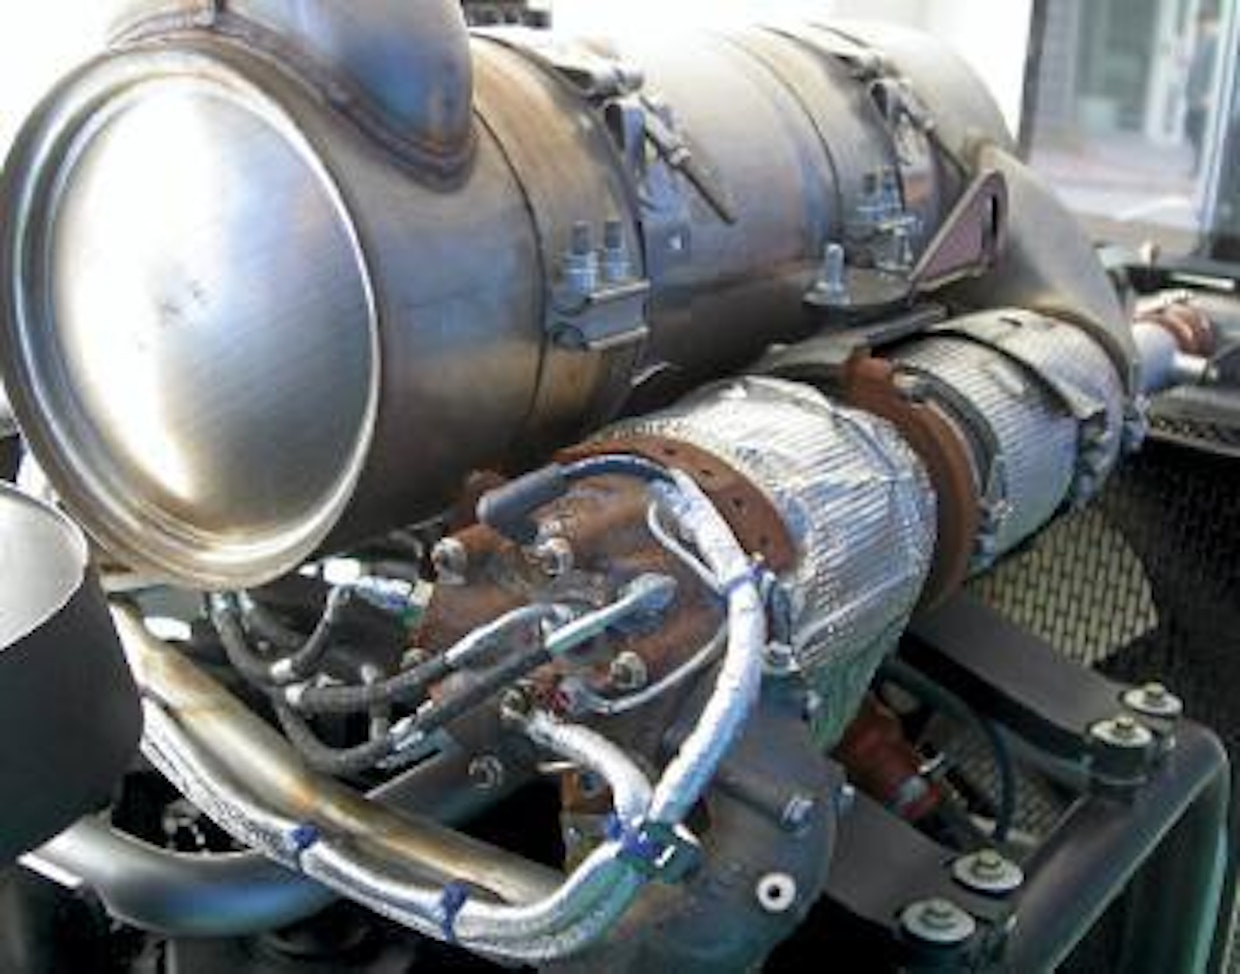 Perkinsin suurimmissa moottoreissa hiukkassuodin nostetaan regenerointilämpöön pakolinjaan ahtimen jälkeen sijoitetulla polttimella.